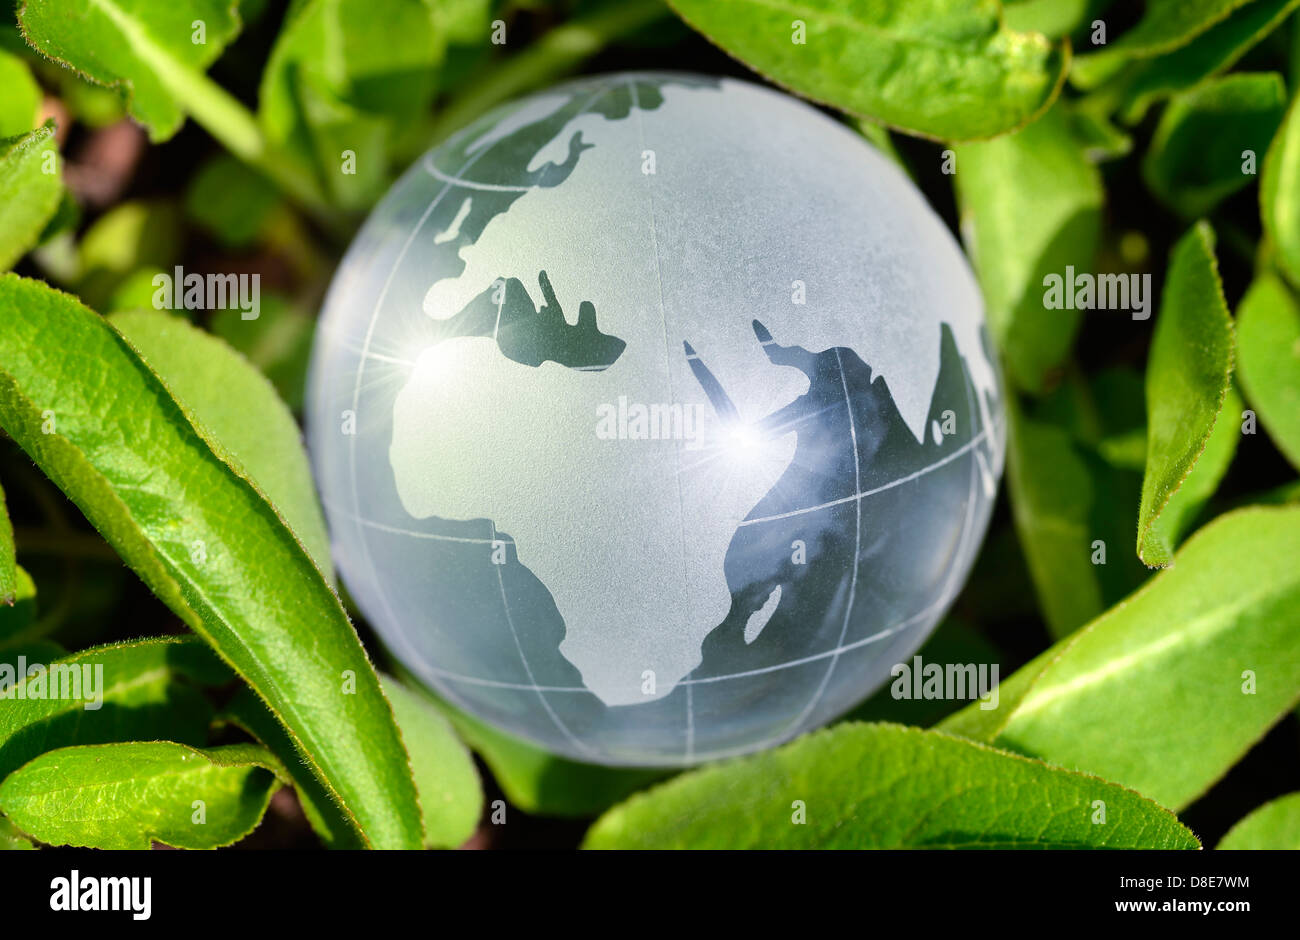 World globe surrounded by leaves, sustainability Stock Photo